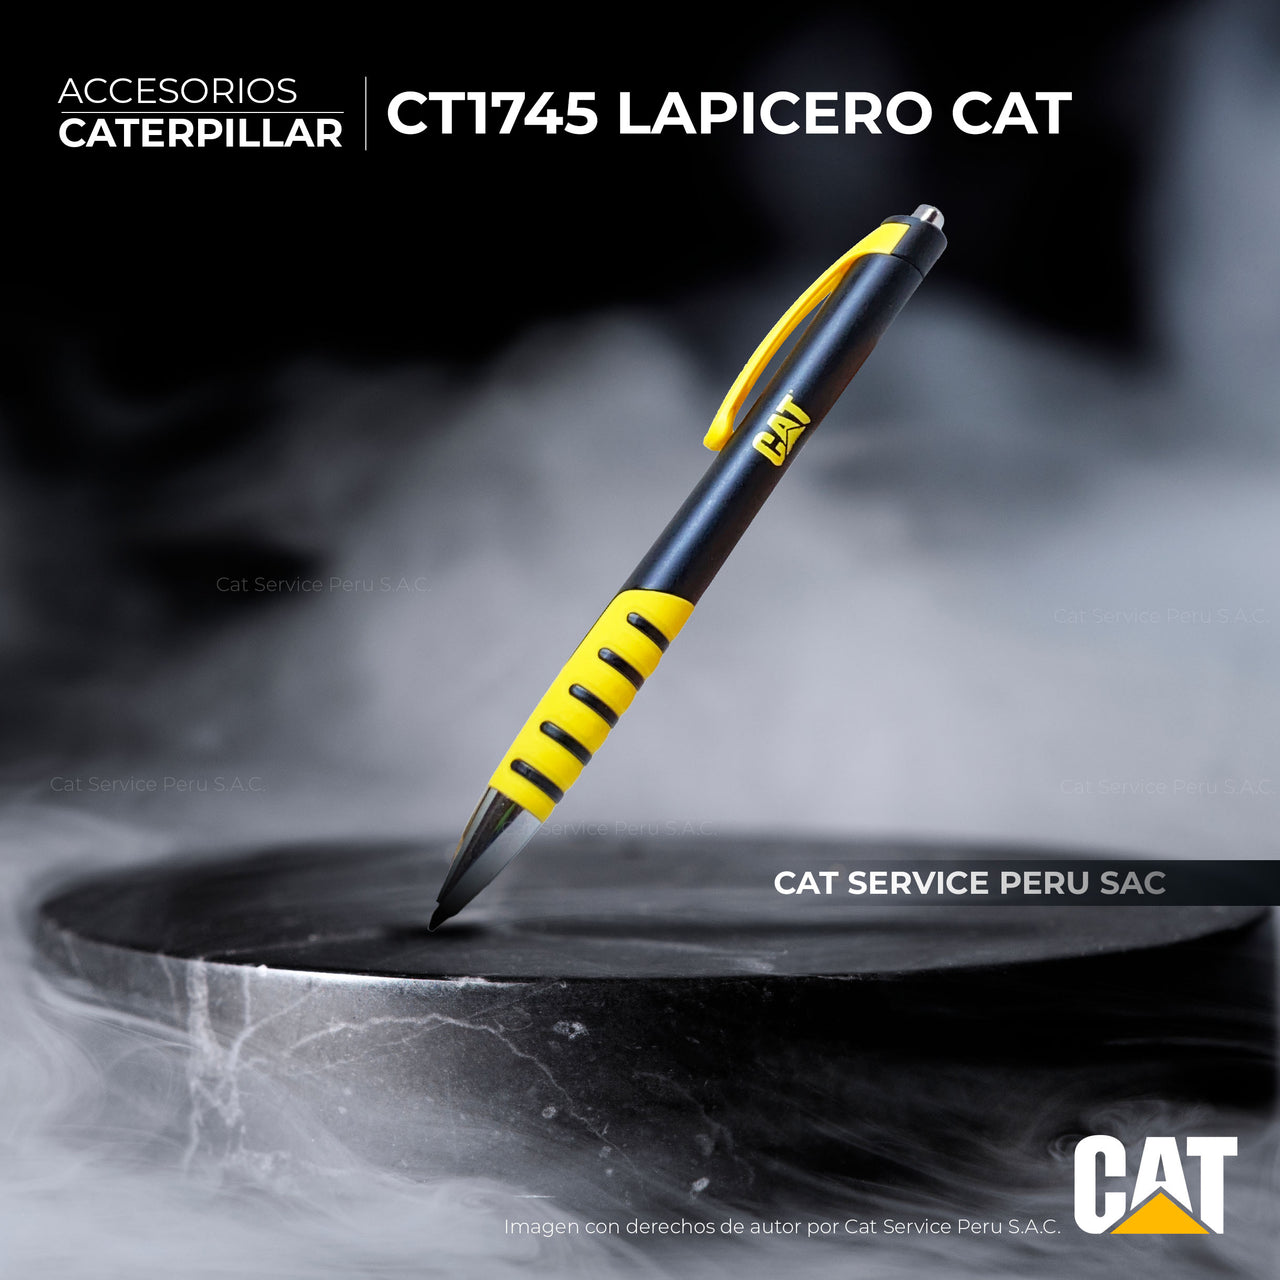 CT1745 Lapicero Cat